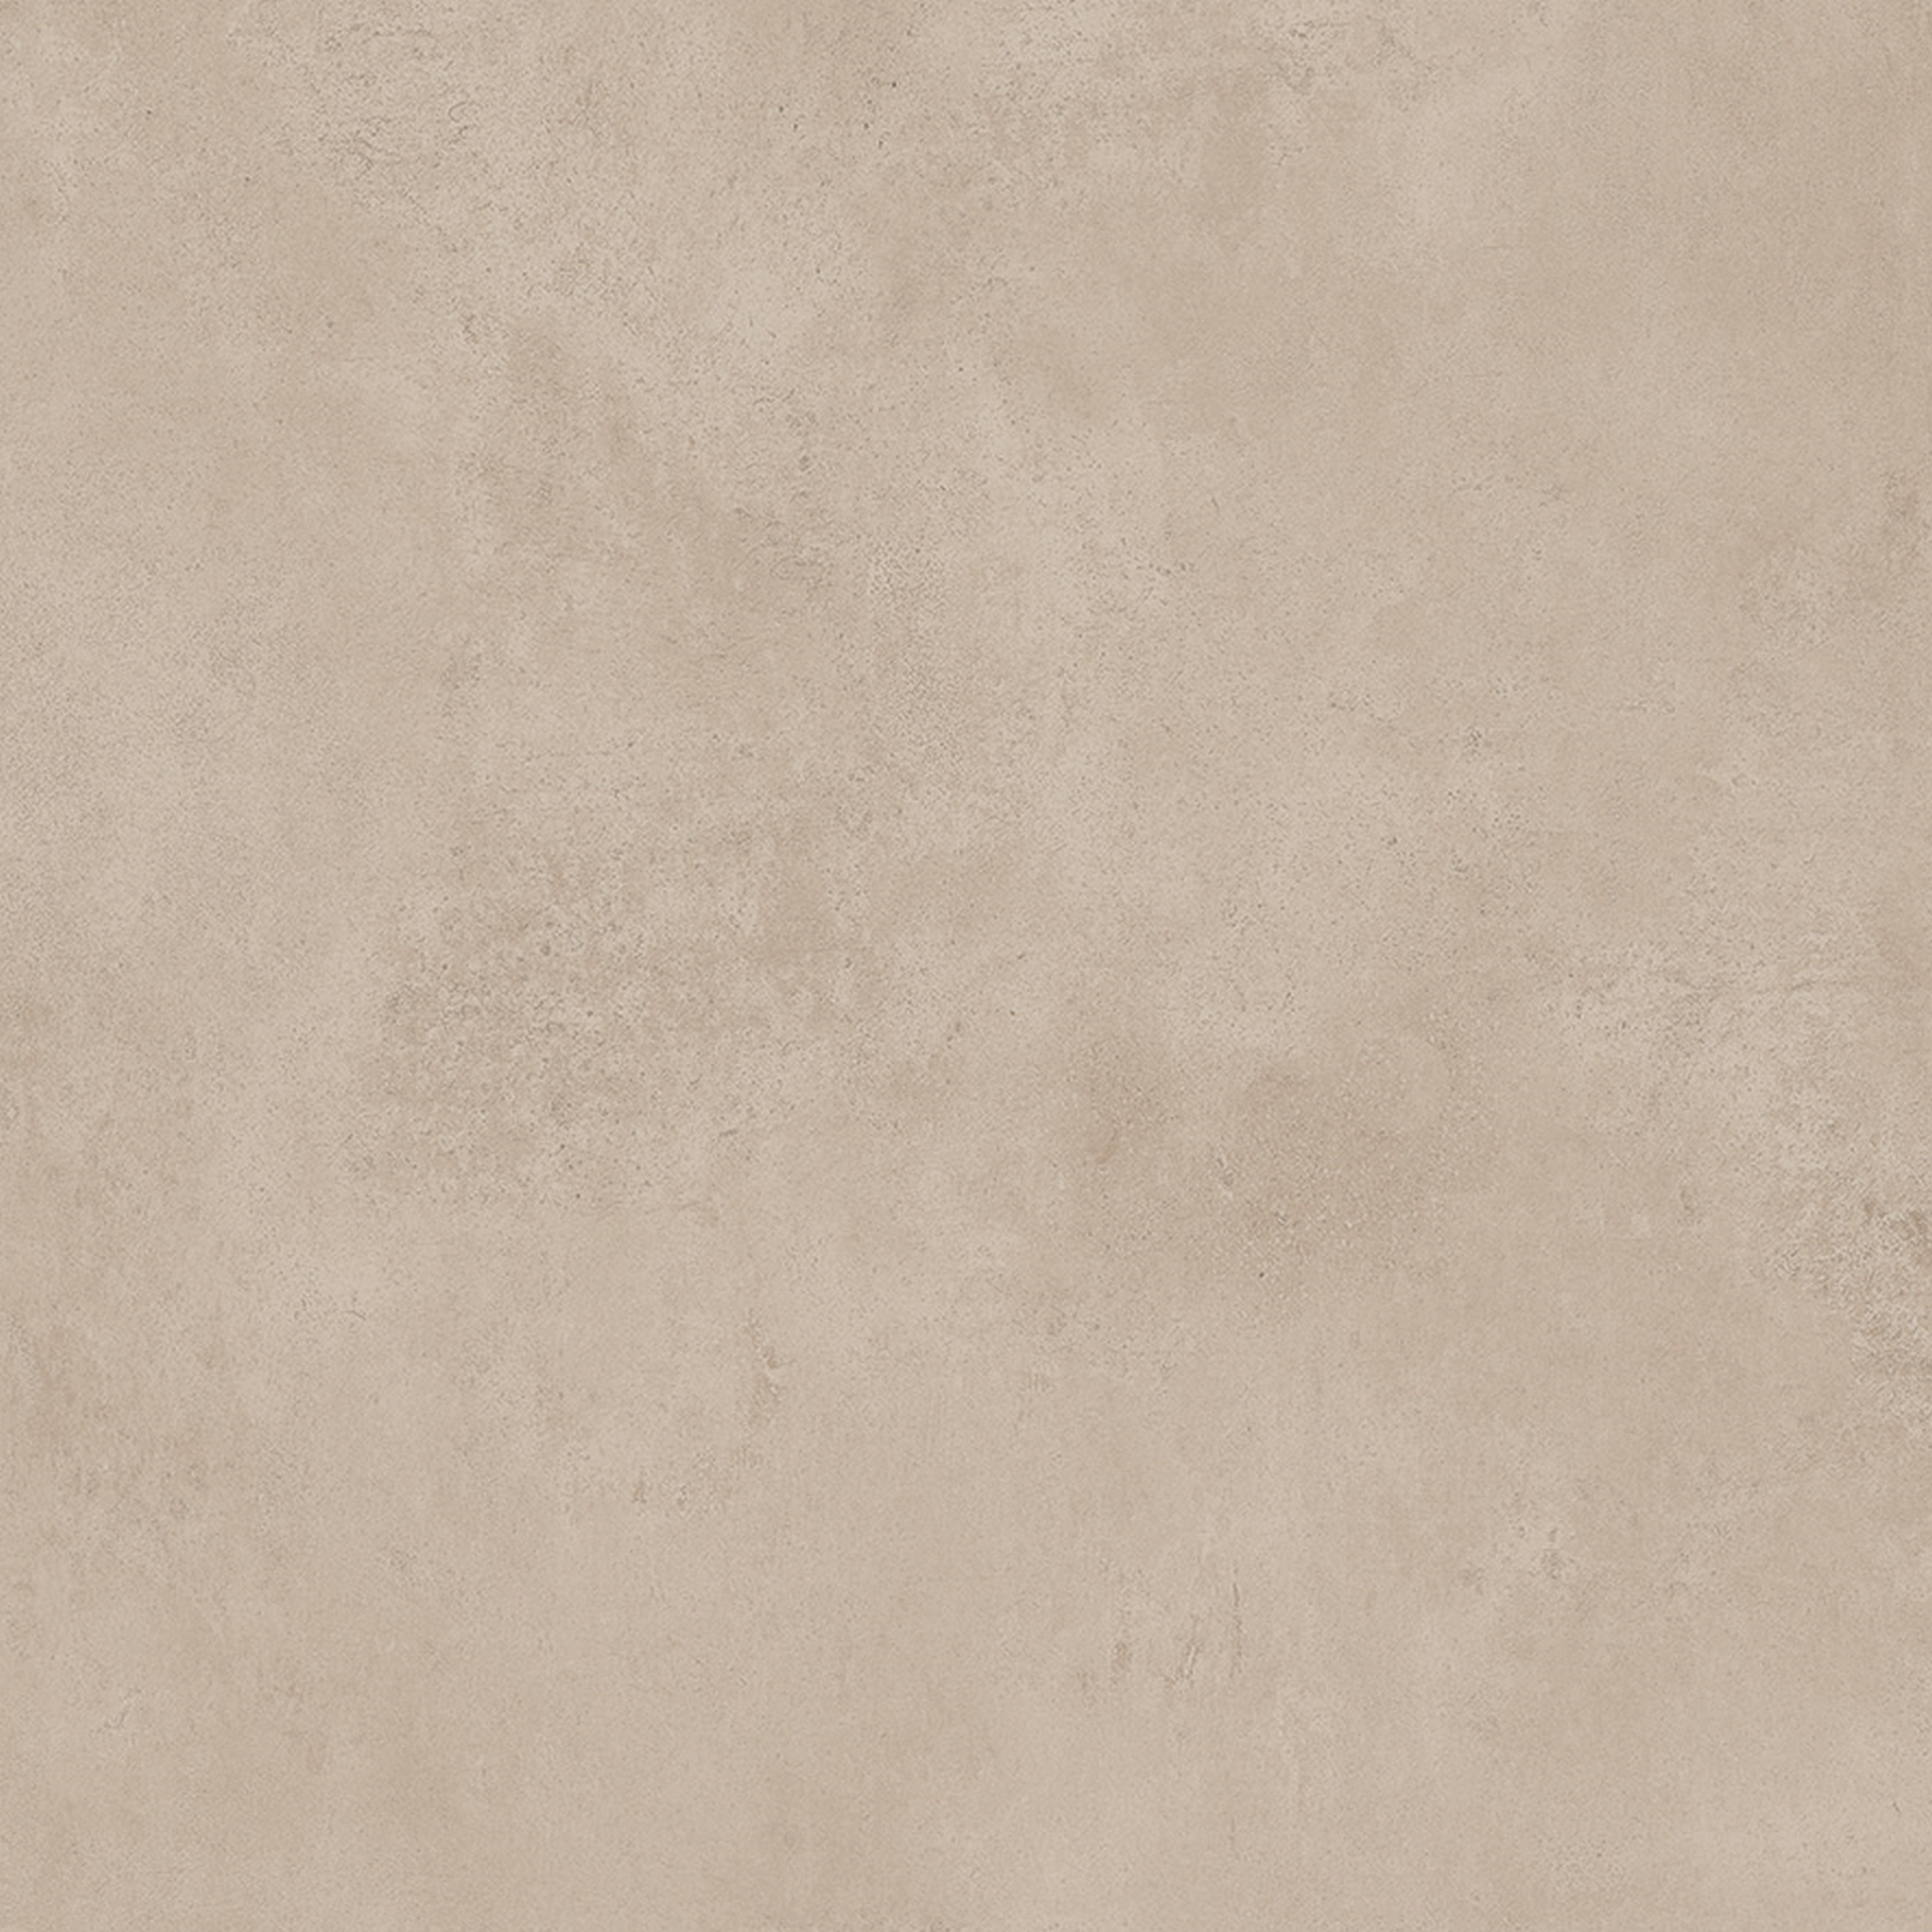 Bodenfliese 'Bisquit' Feinsteinzeug 60 x 60 cm beige + product picture